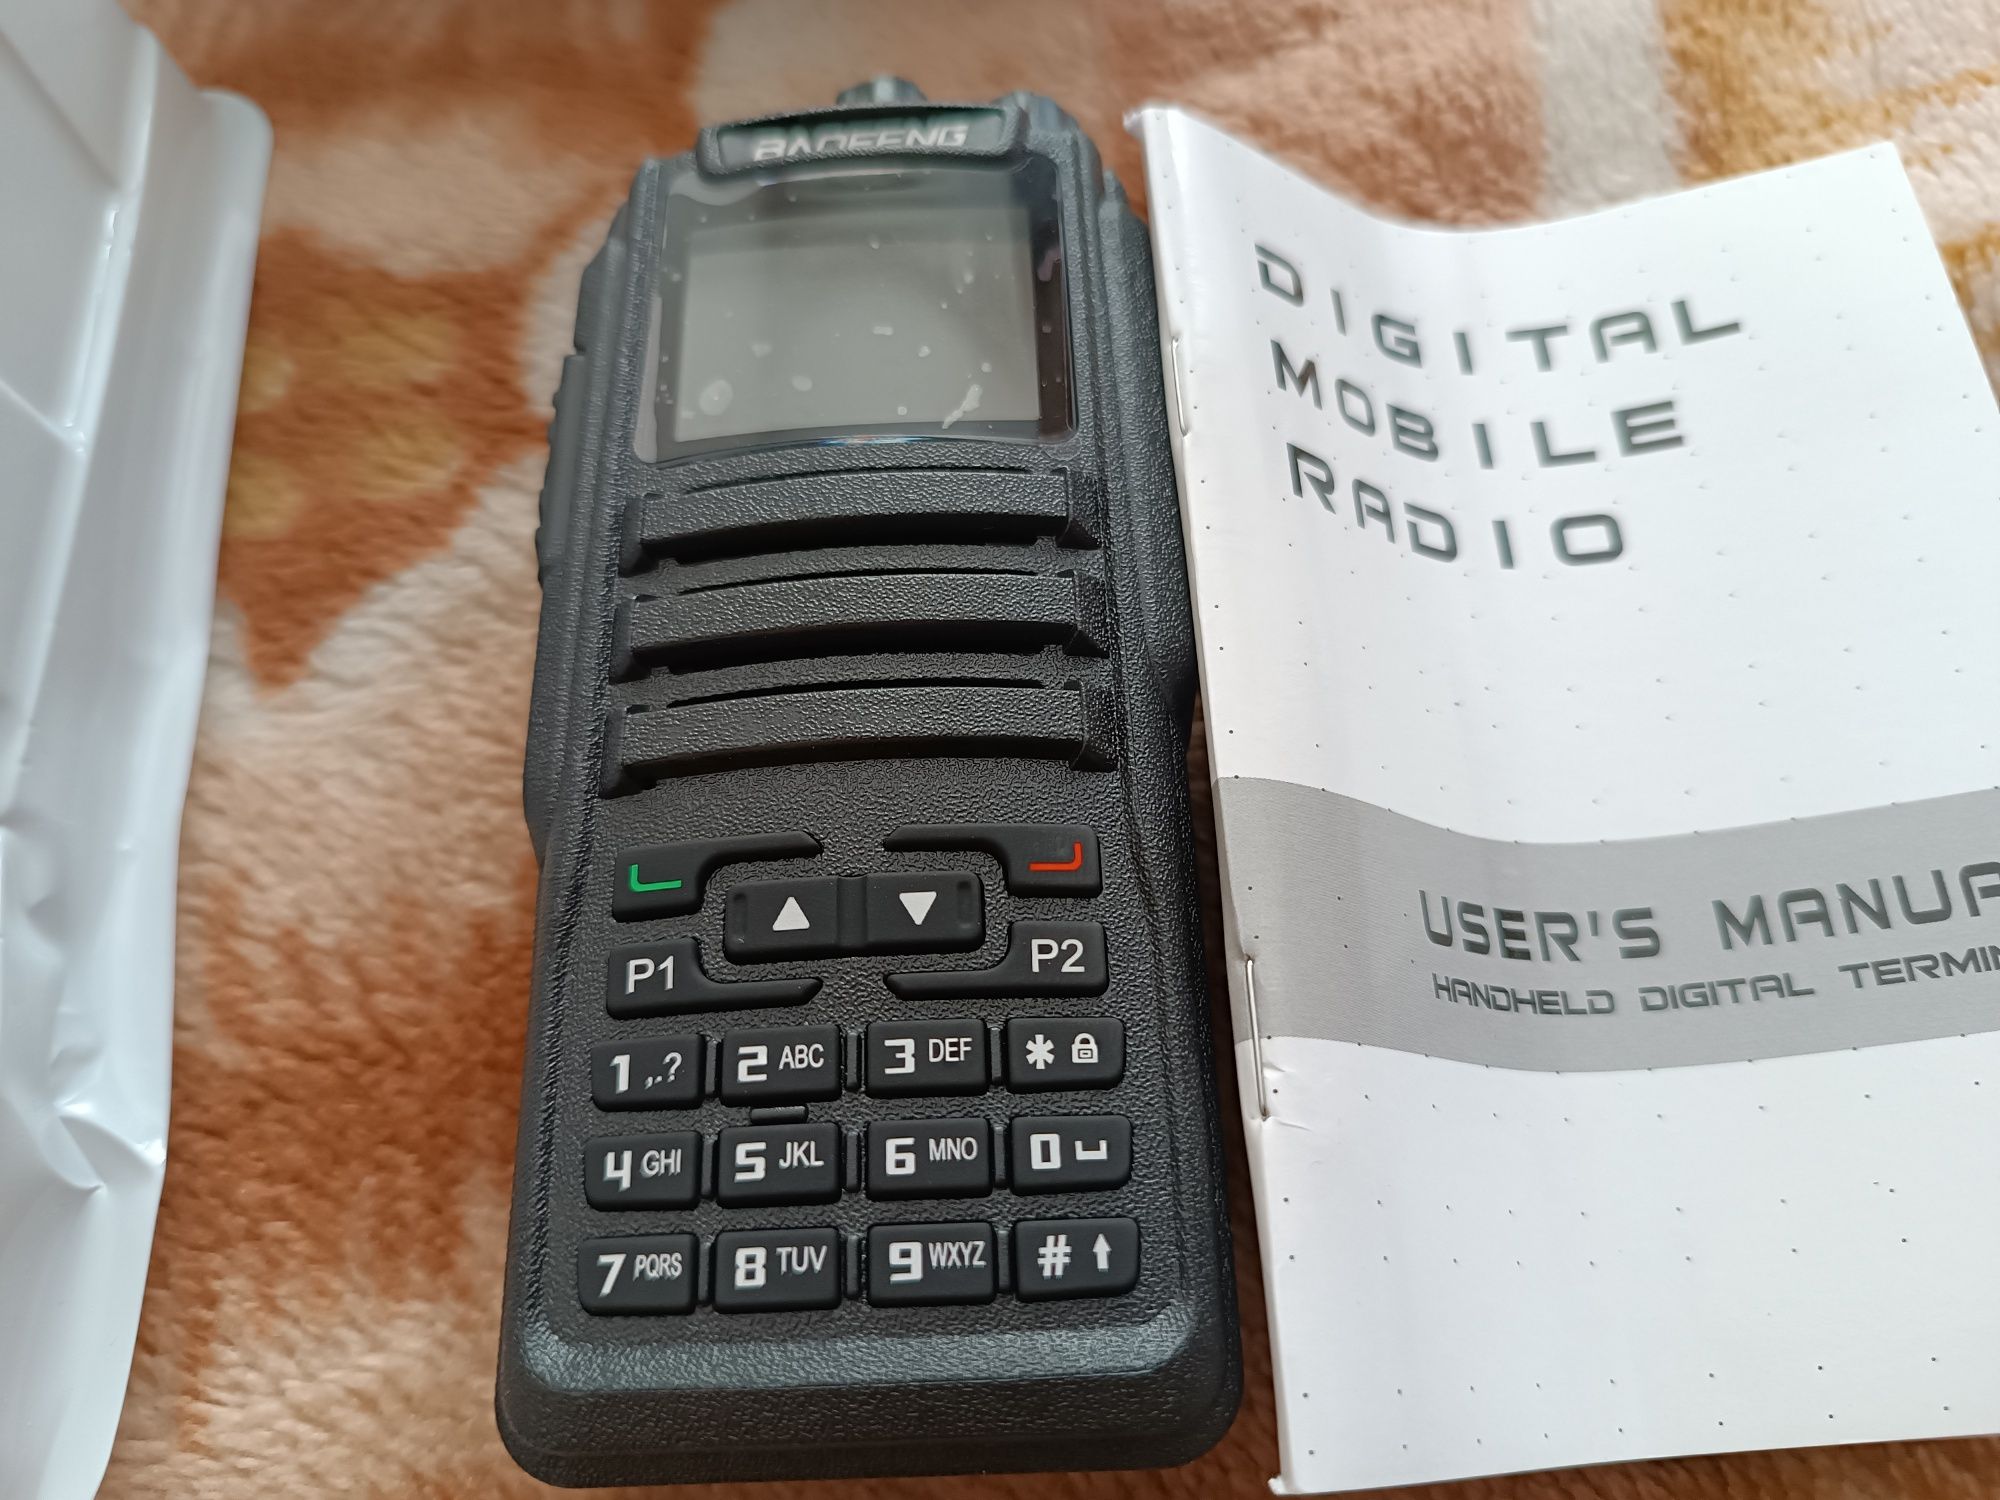 Radiotelefon analogowo-cyfrowy Baofeng DM-1701 2m/70cm. OpenGD77